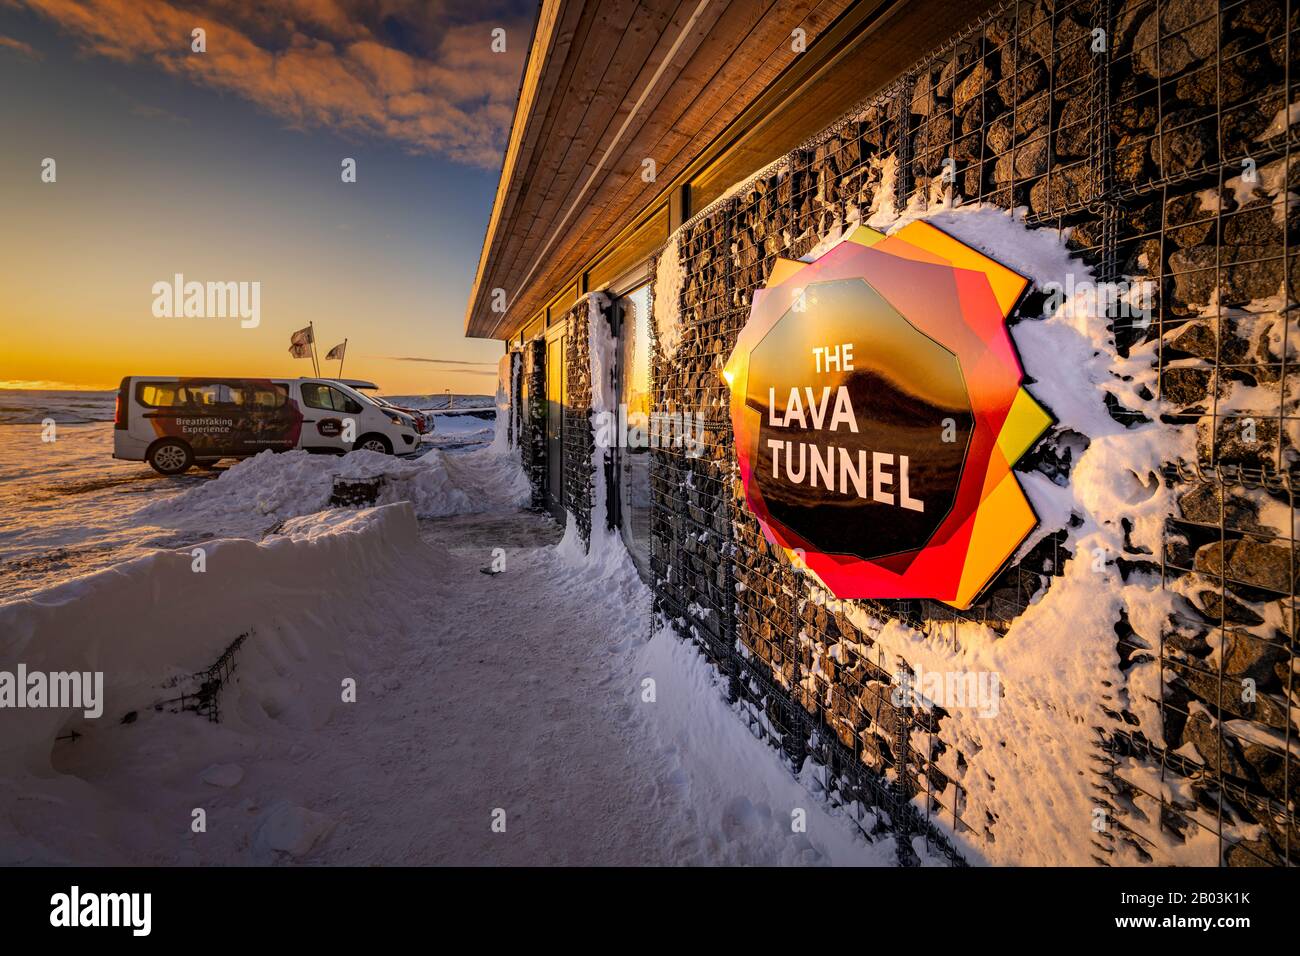 Tunnel Raufarholshellir Lava, Islande. L'un des tubes de lave les plus longs est à courte distance de Reykjavik, Islande Banque D'Images